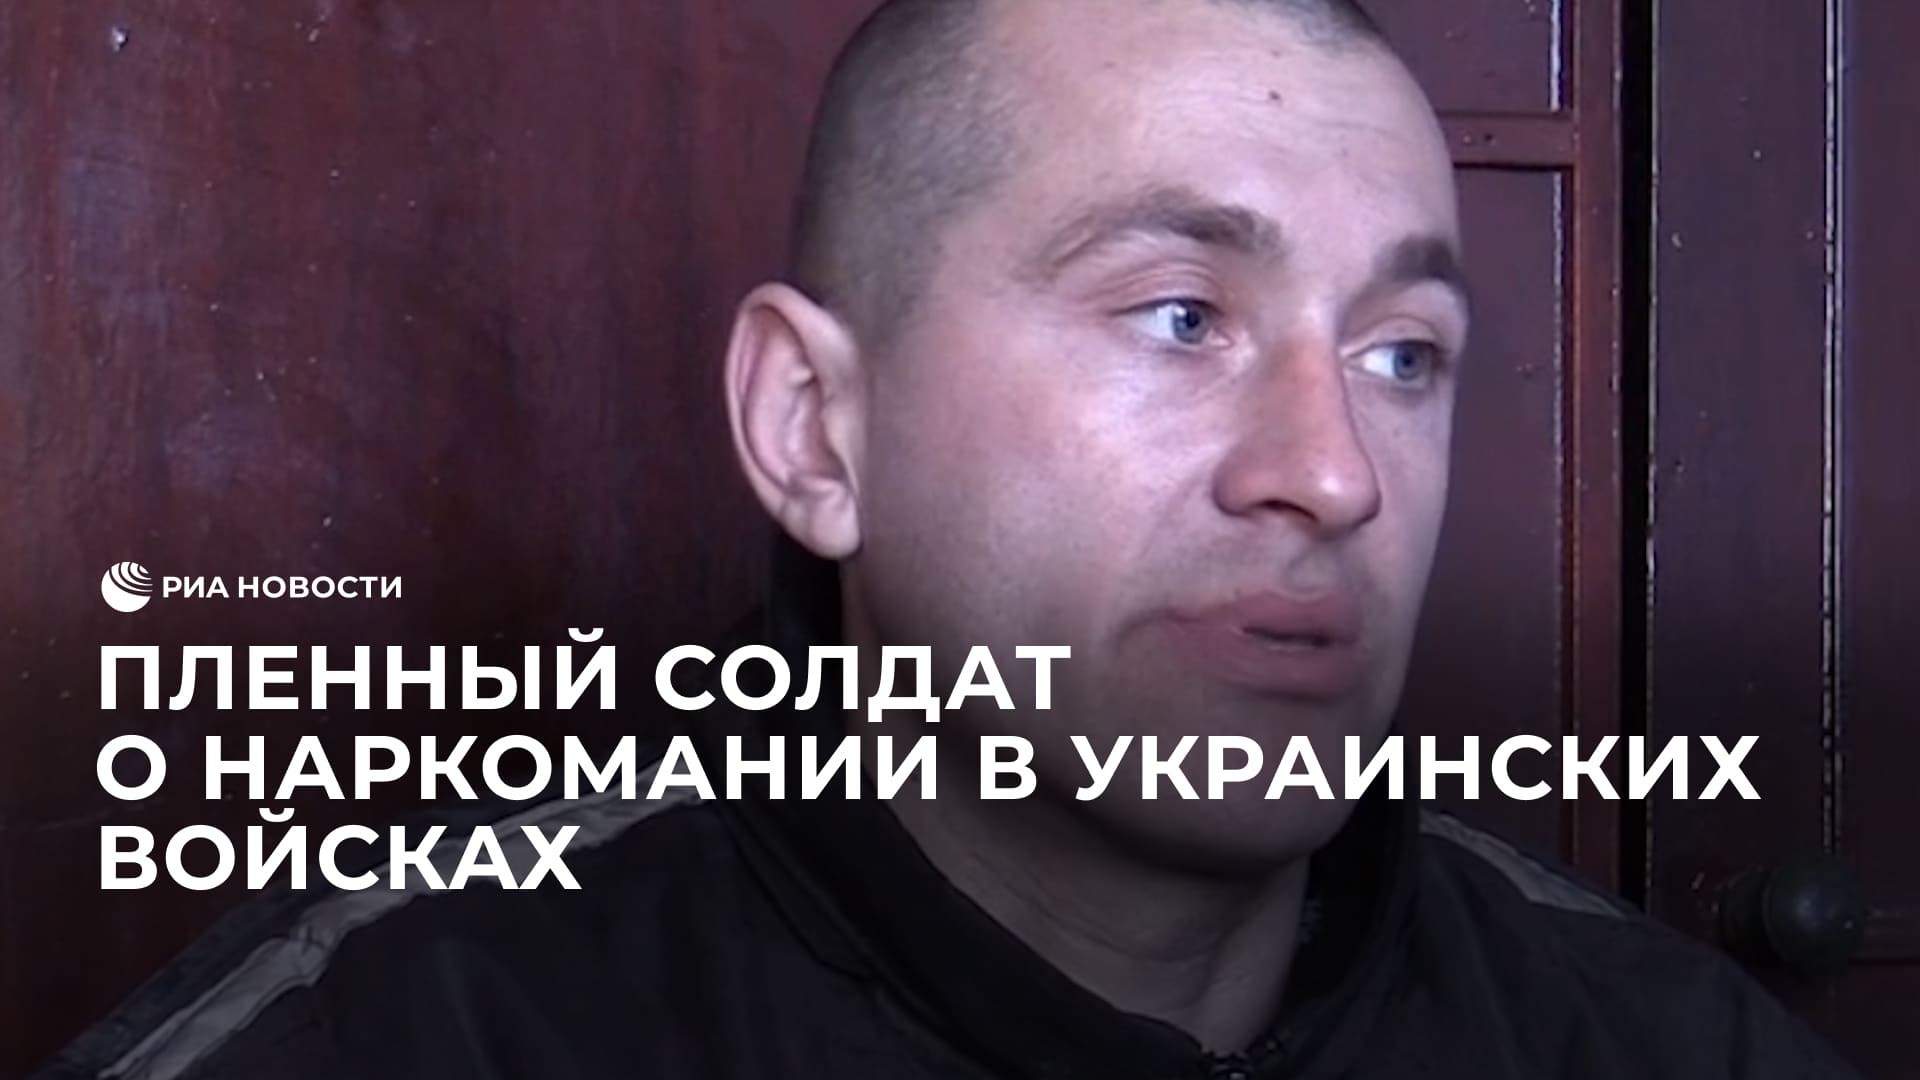 Пленный солдат о наркомании в украинских войсках